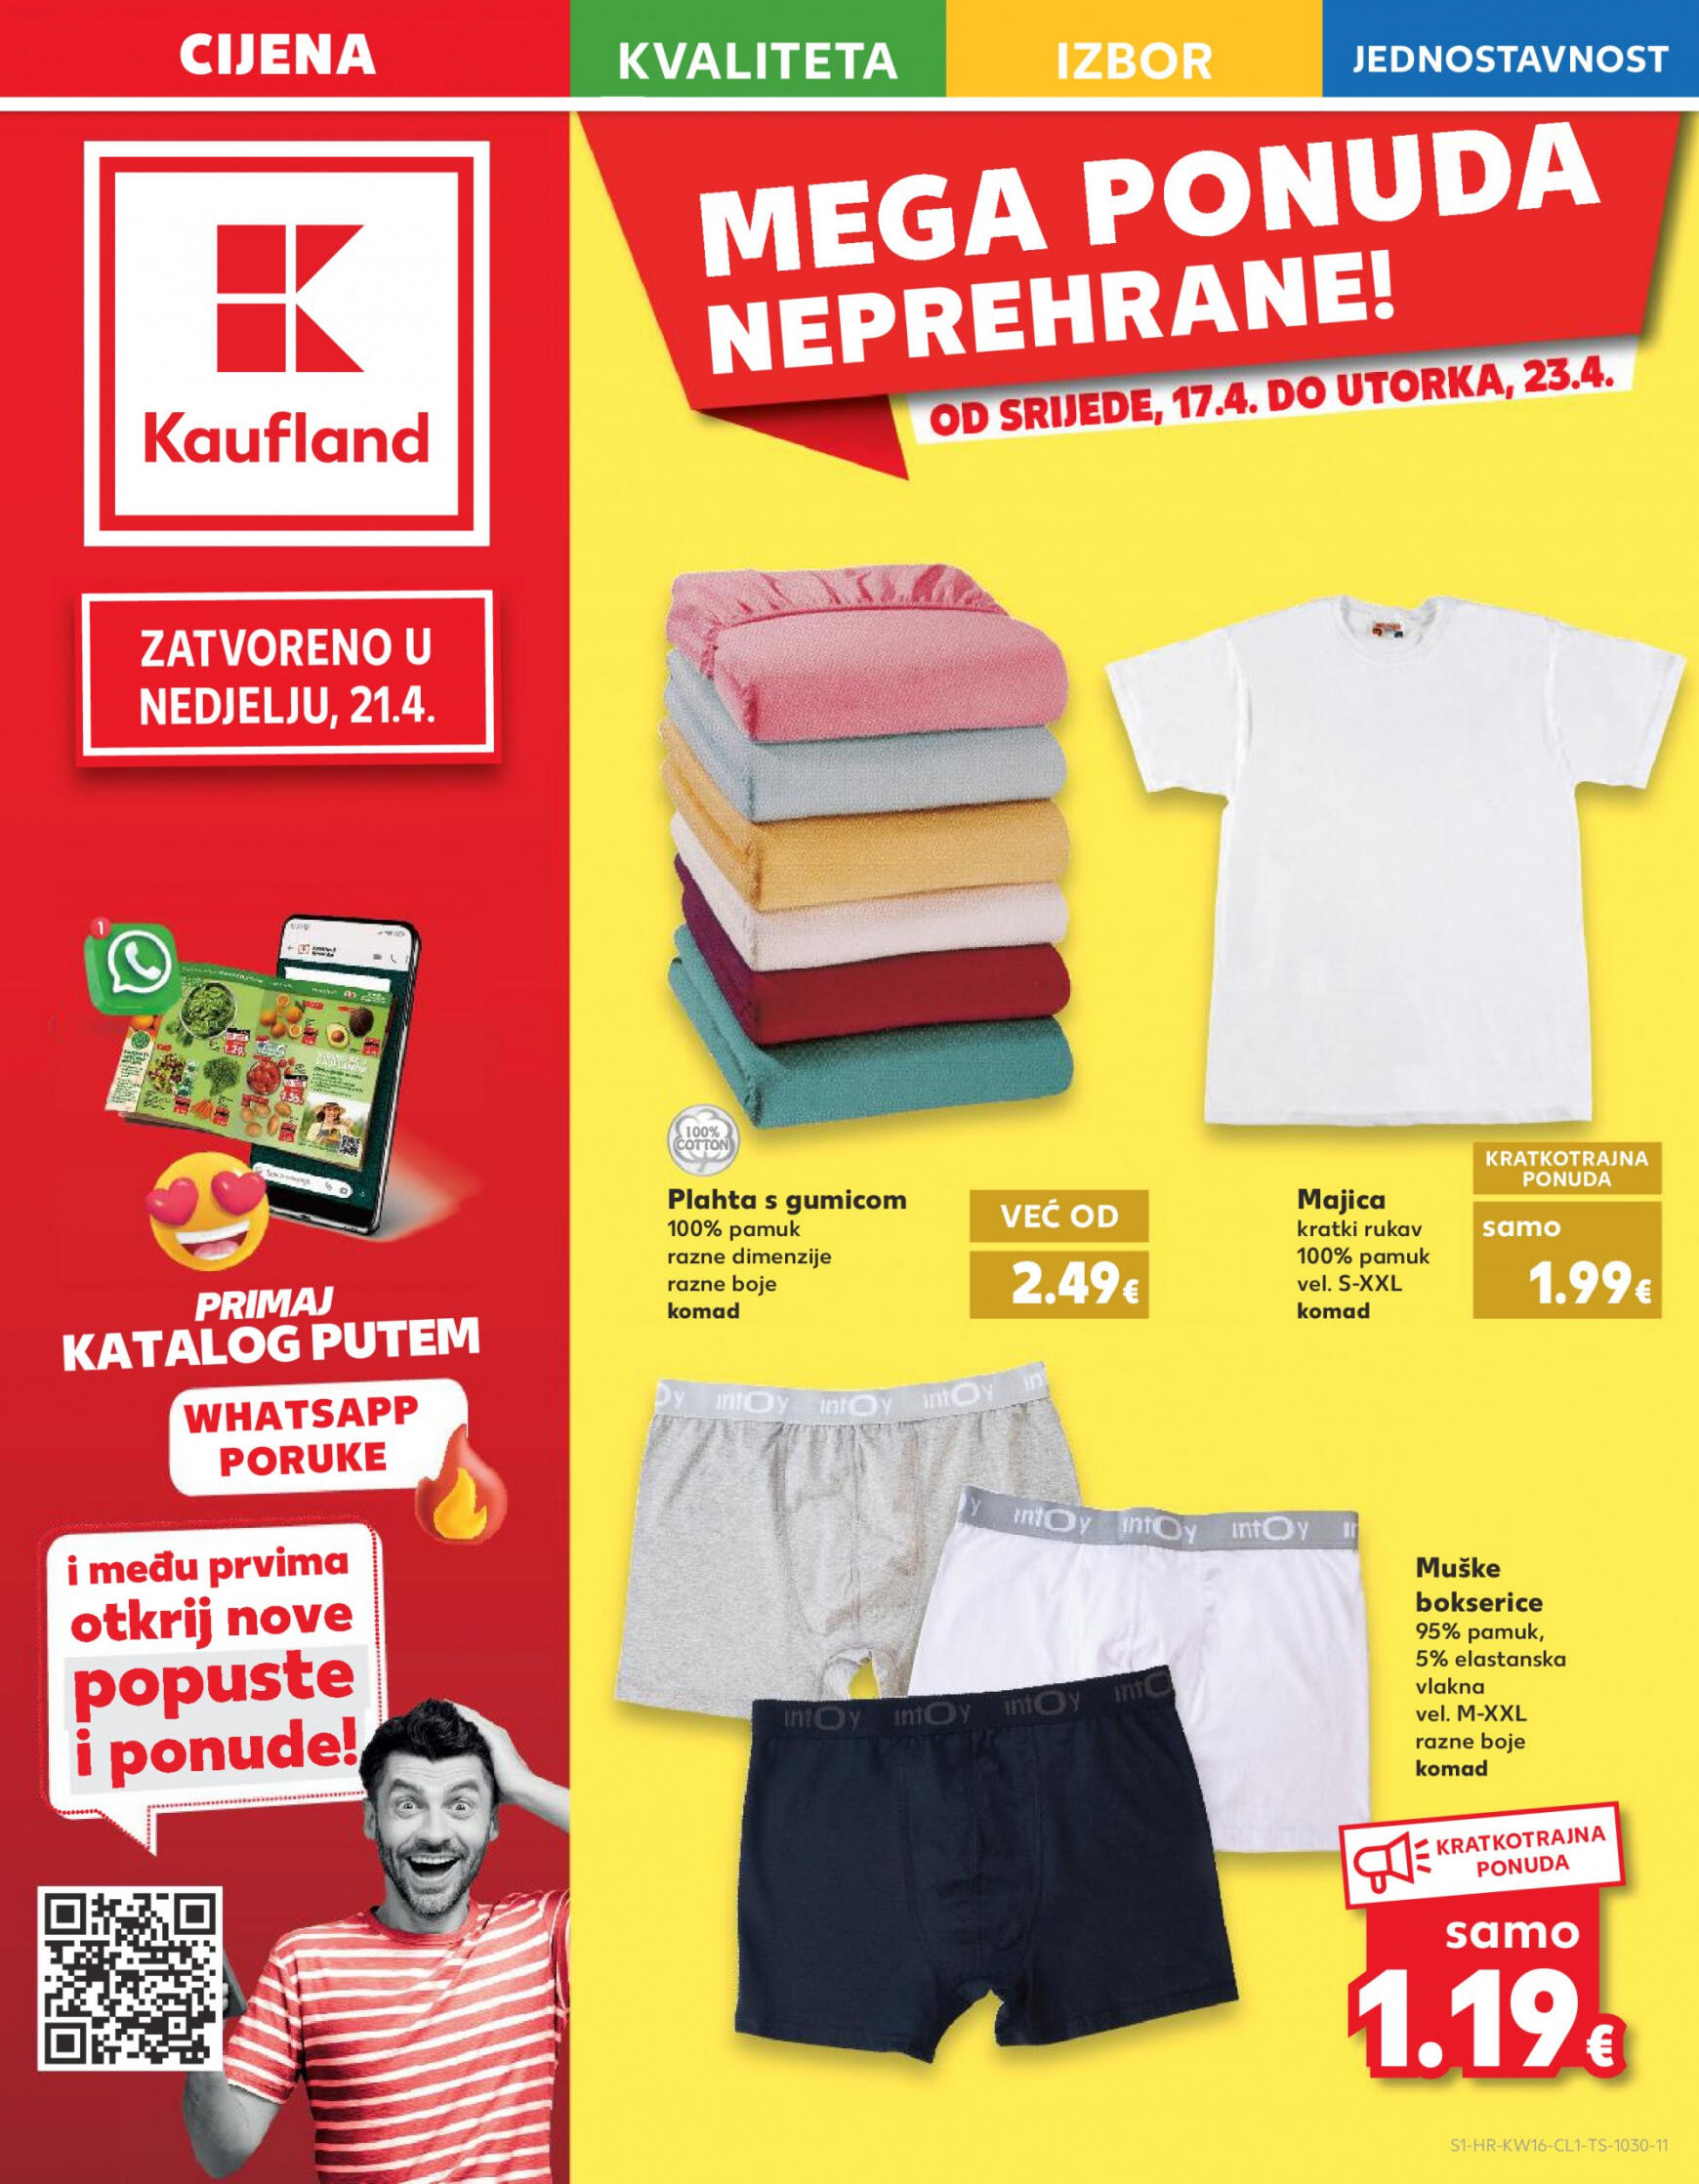 kaufland - Novi katalog Kaufland 17.04. - 23.04. - page: 1